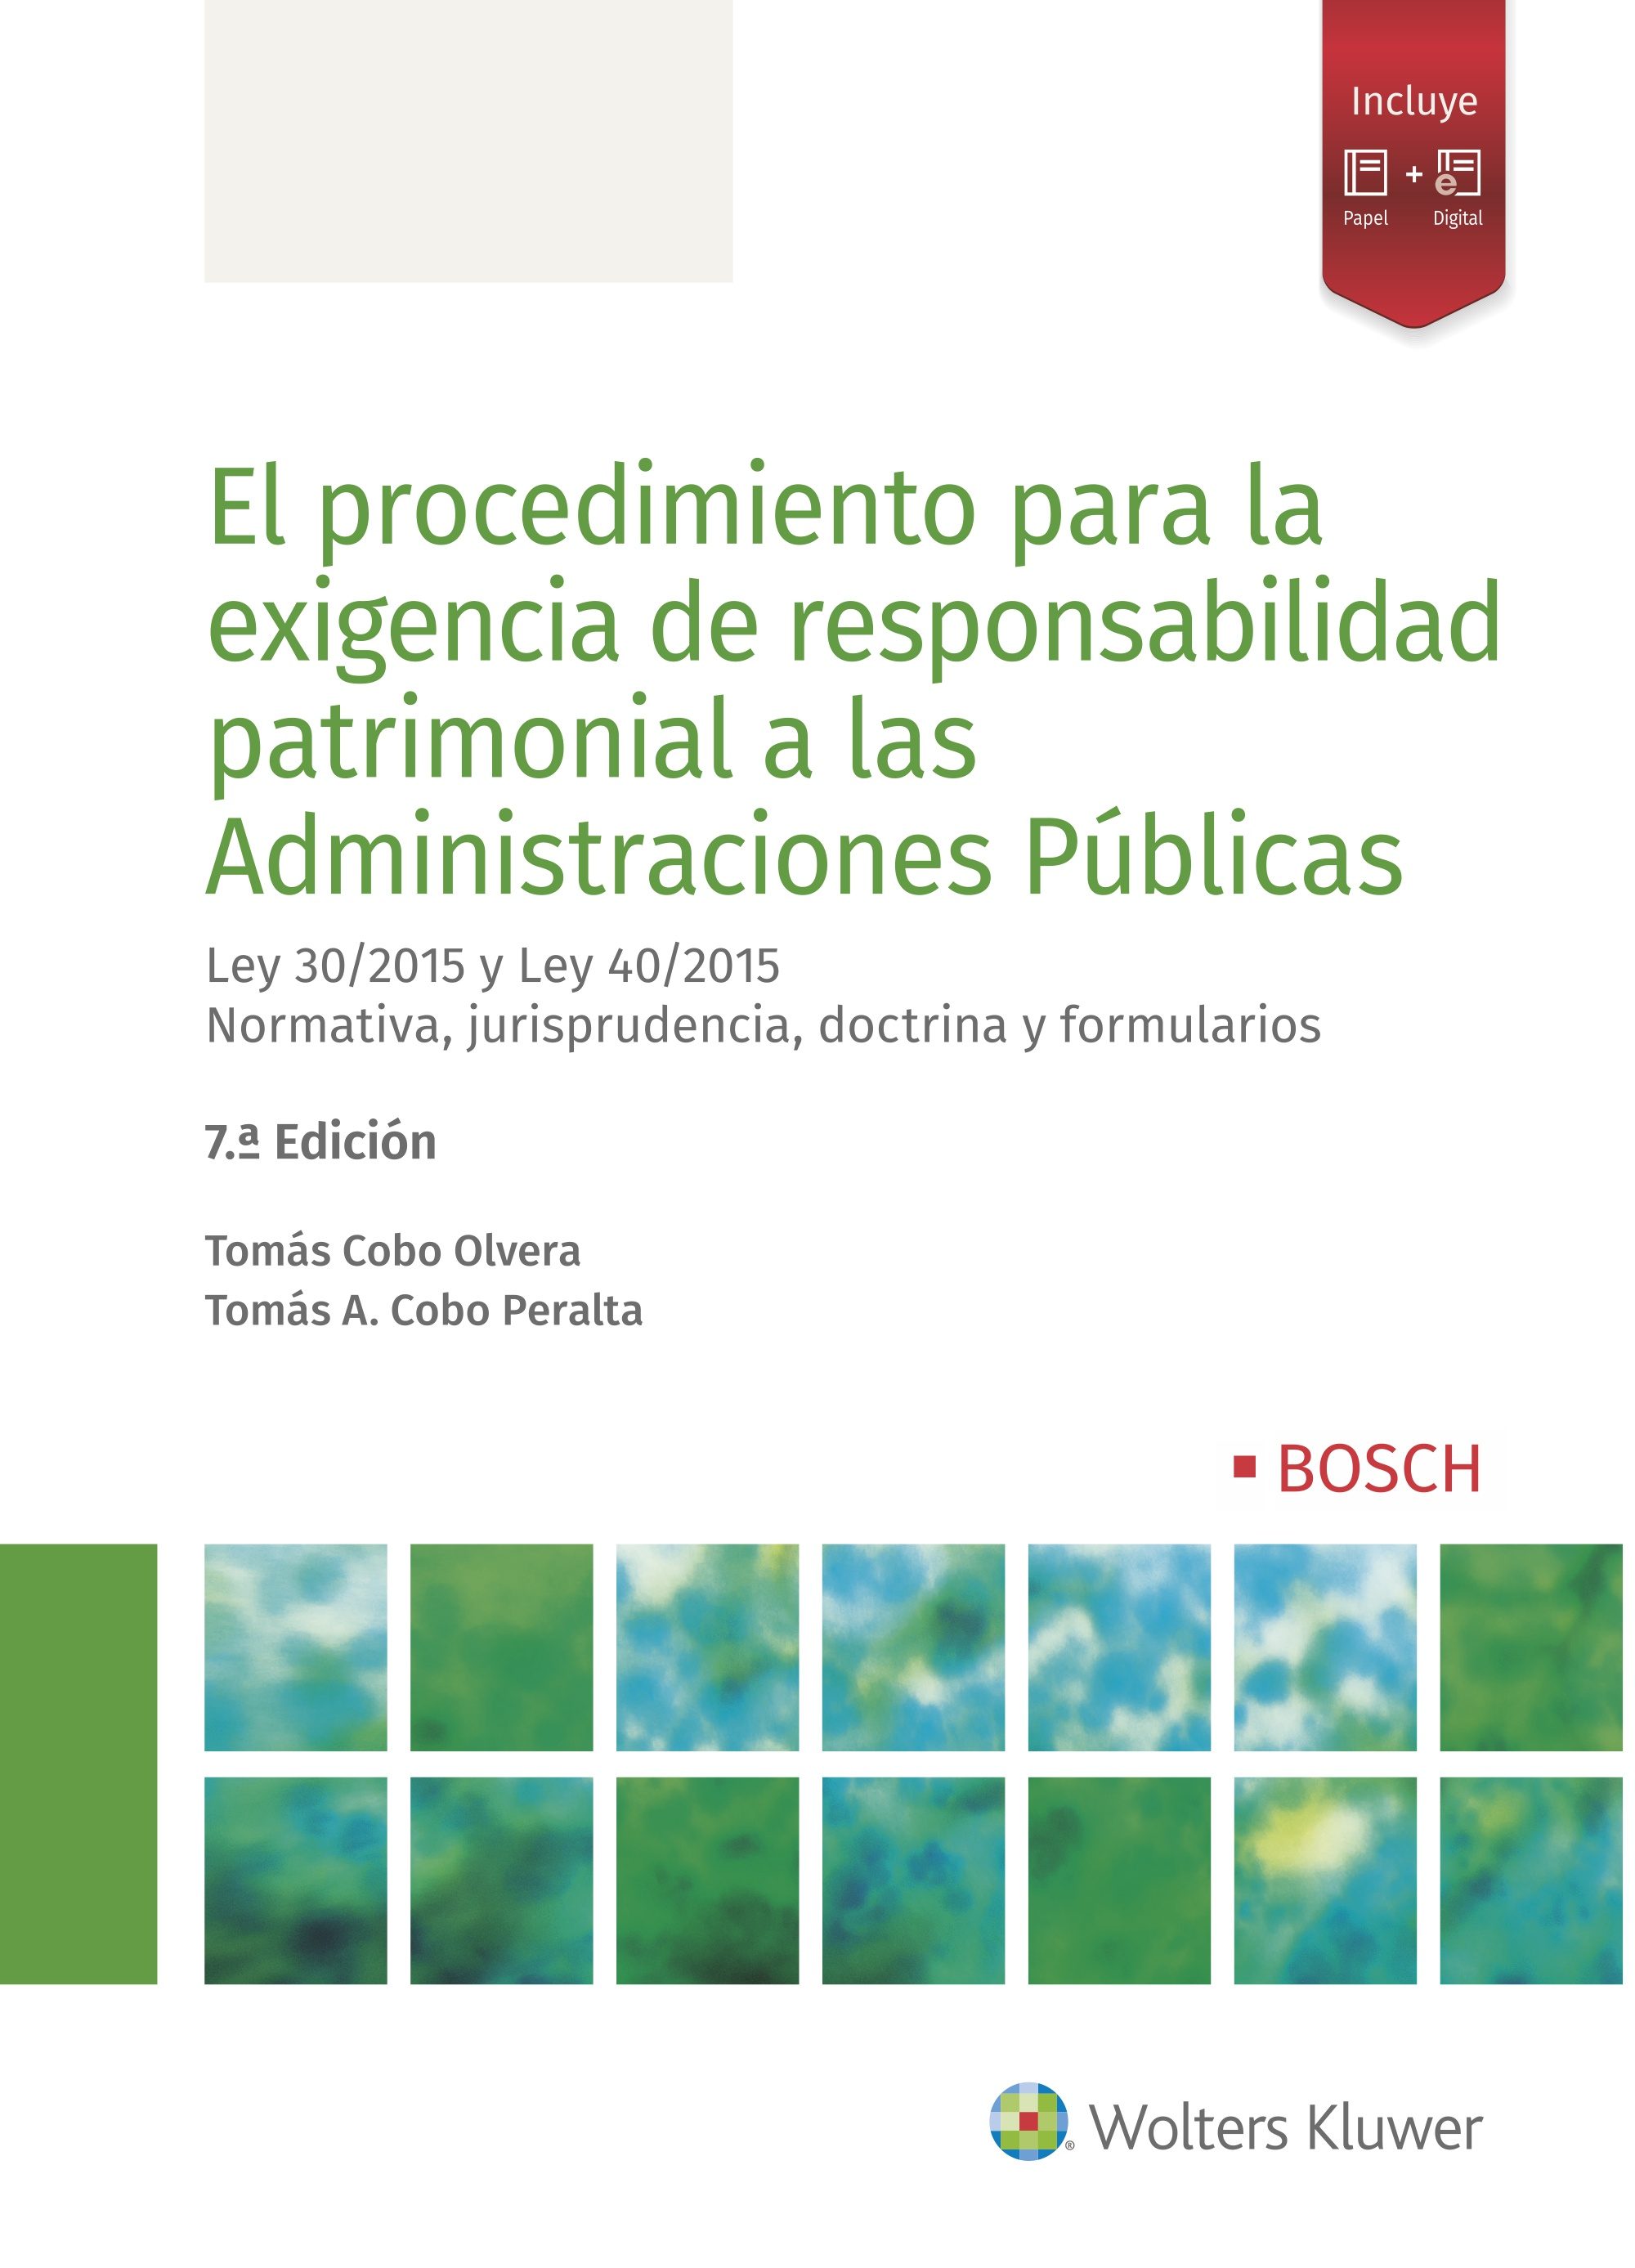 El procedimiento para la exigencia de responsabilidad patrimonial a las Administraciones Públicas